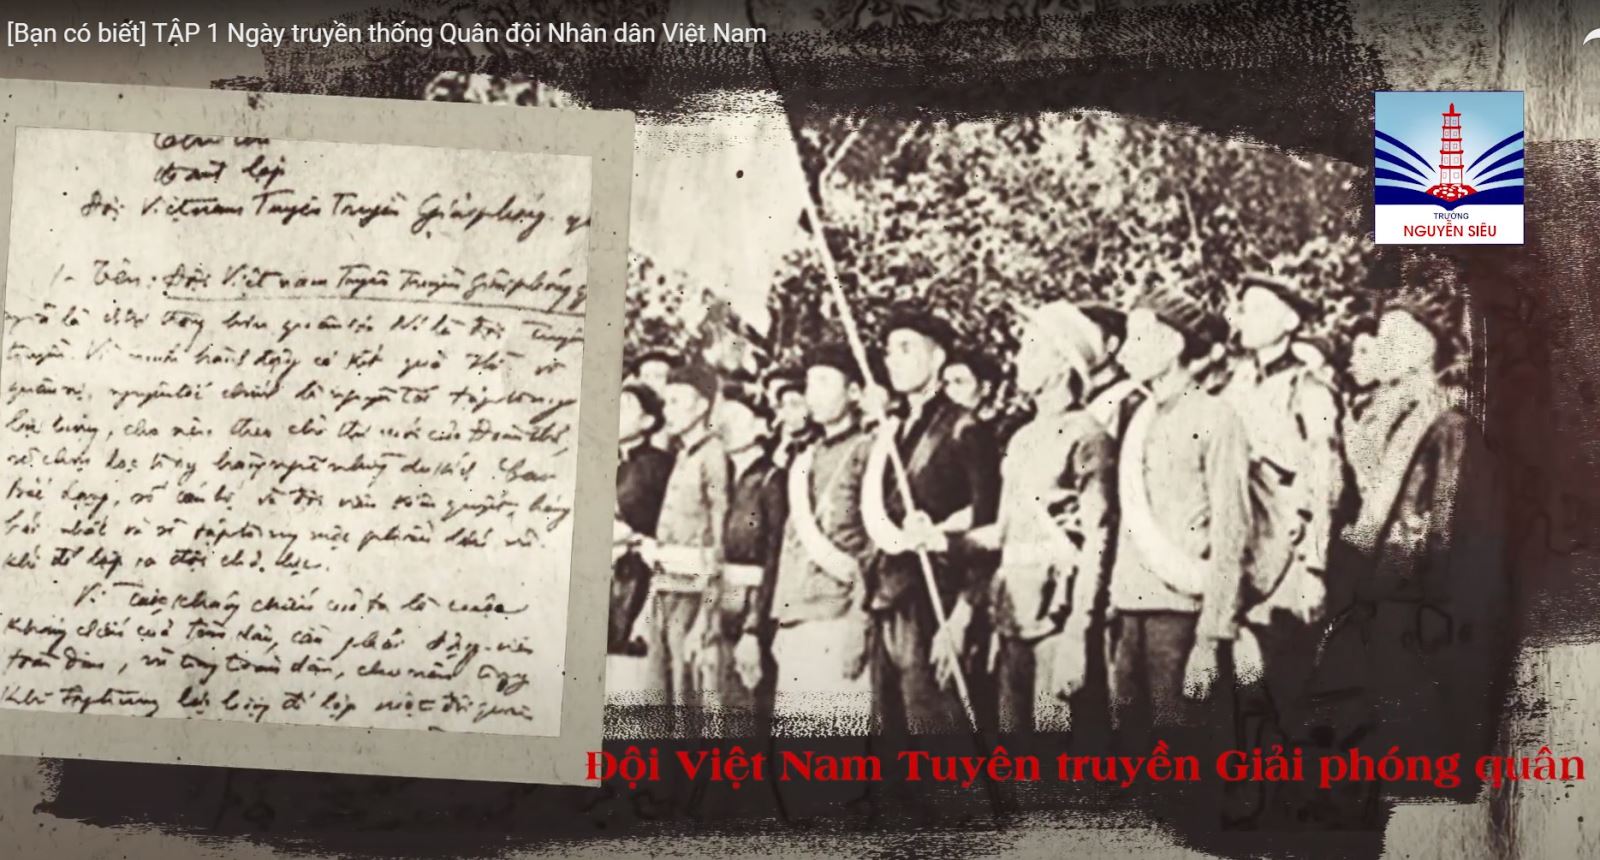 Ngày truyền thống Quân đội Nhân dân Việt Nam